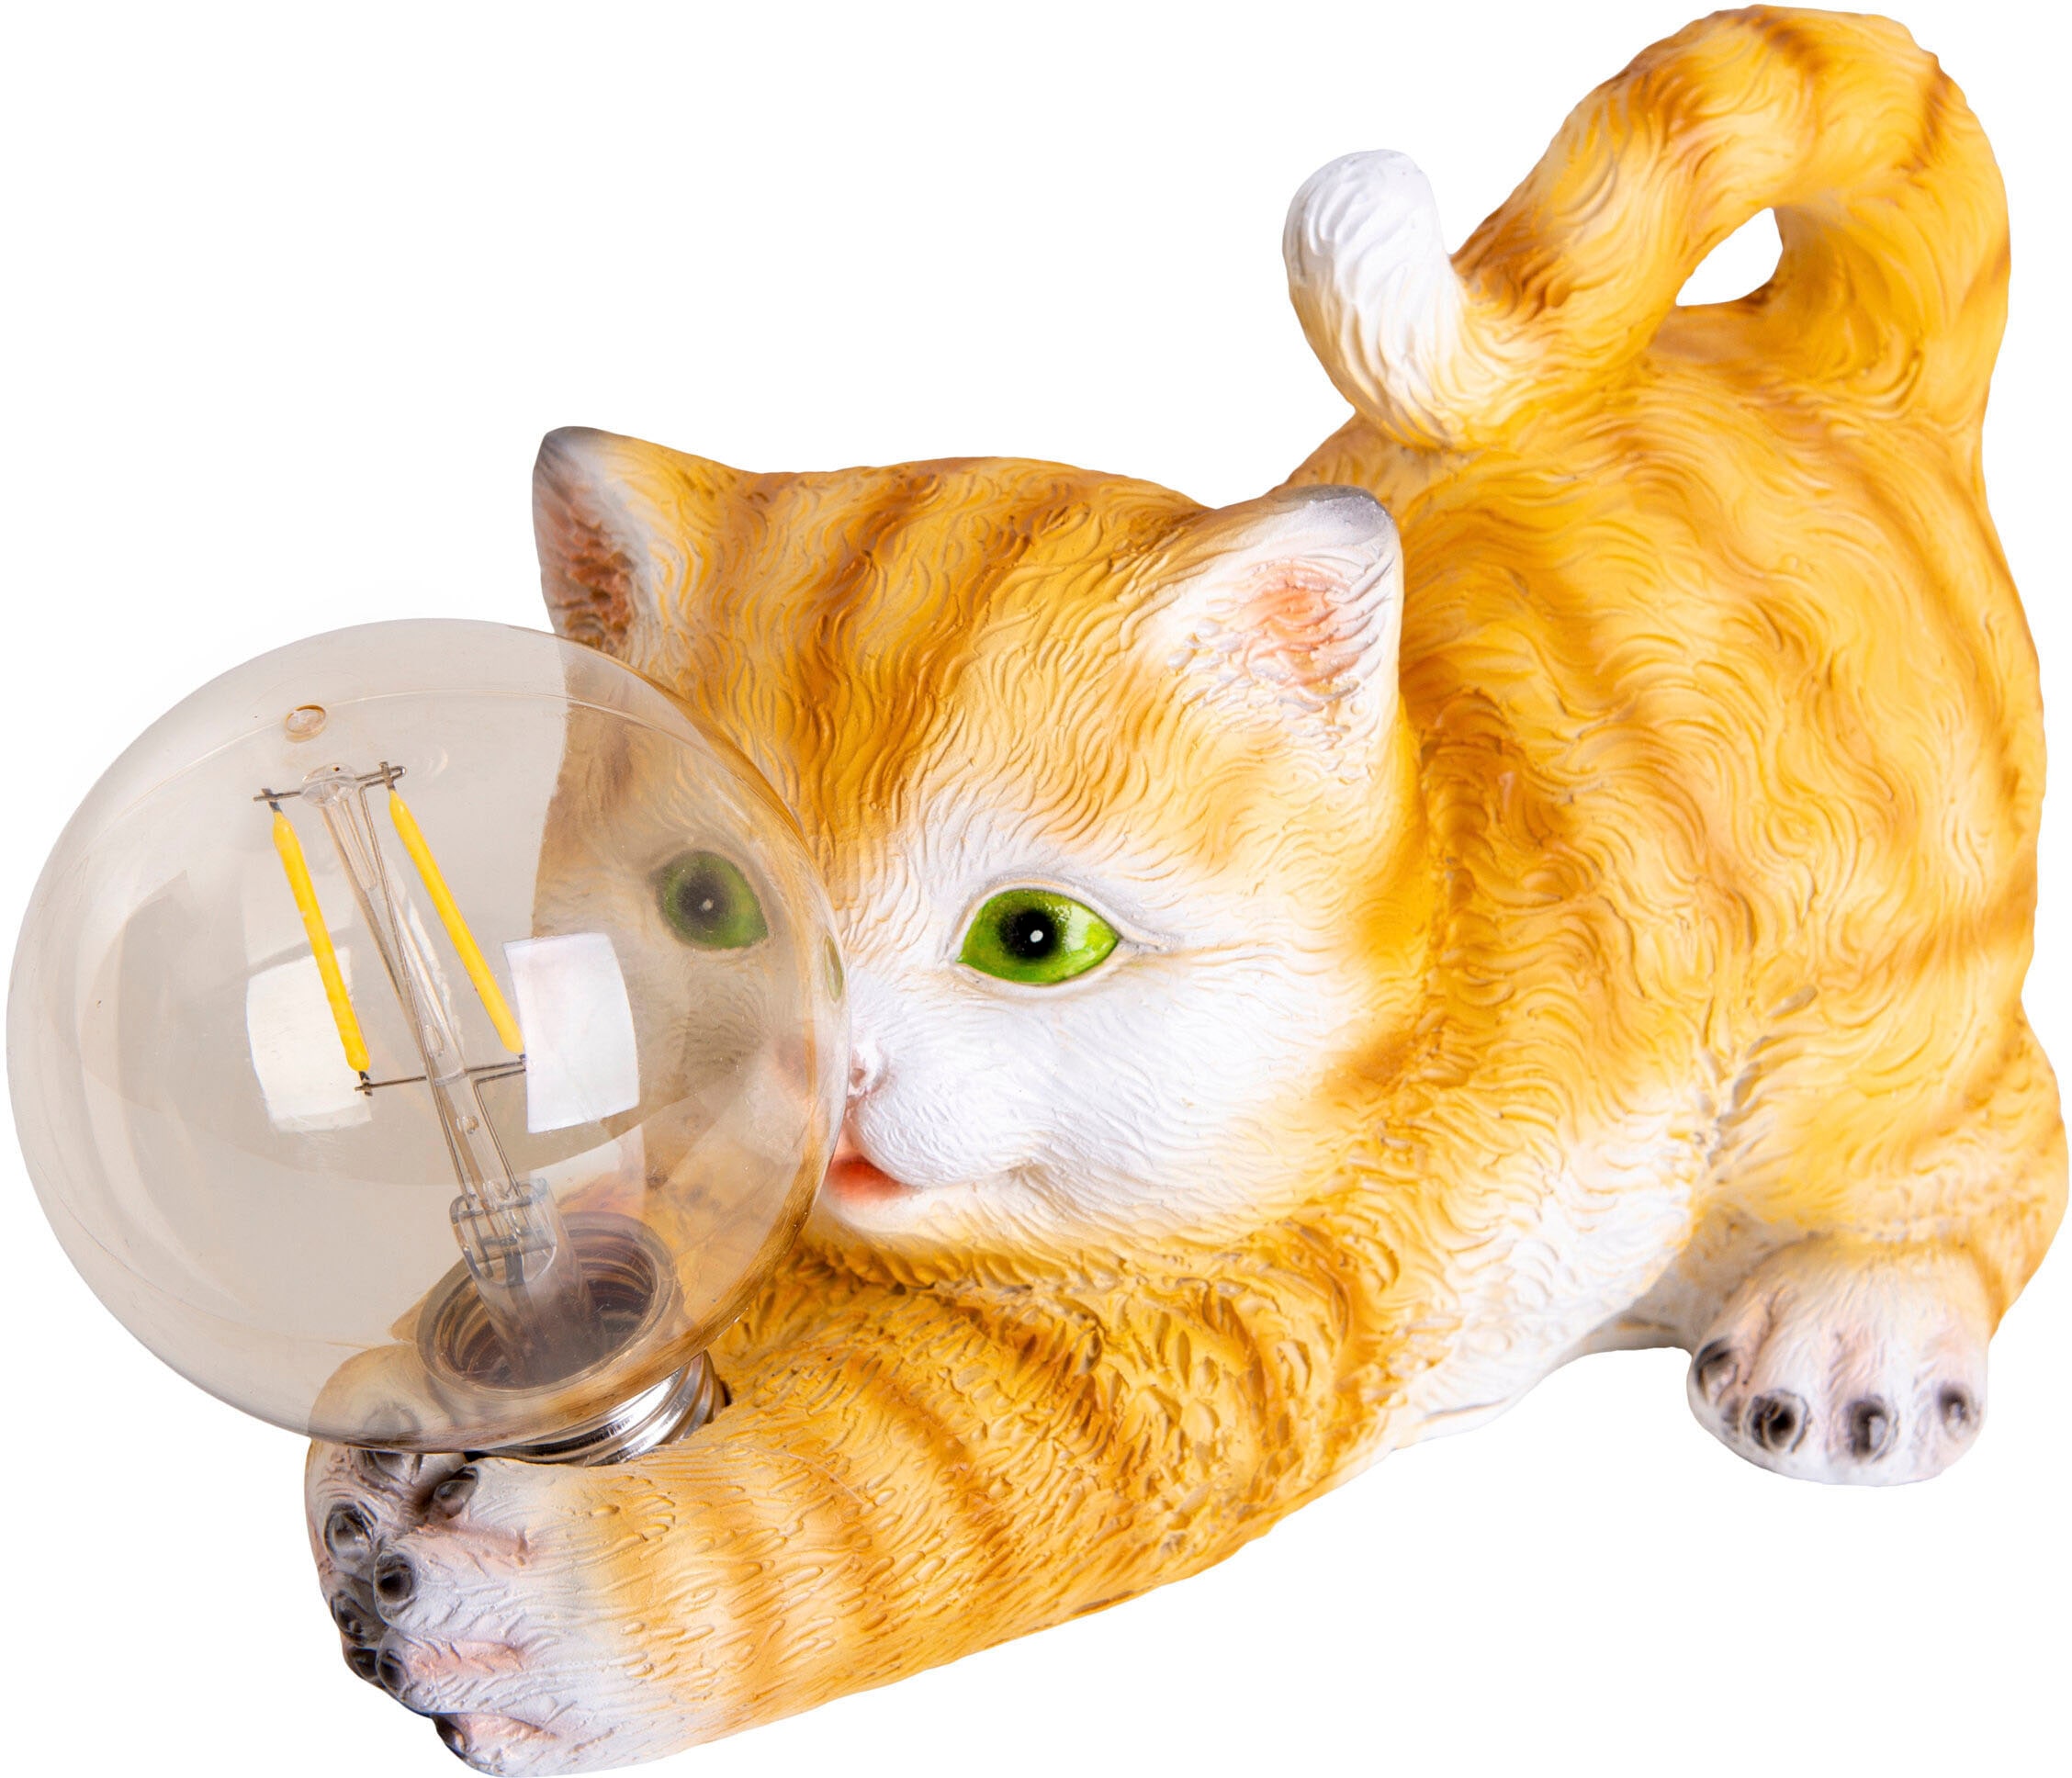 näve LED Solarleuchte »Katze«, 1 flammig-flammig, süße gestreifte Katze mit beleuchteter Kugel und warmweißem Licht